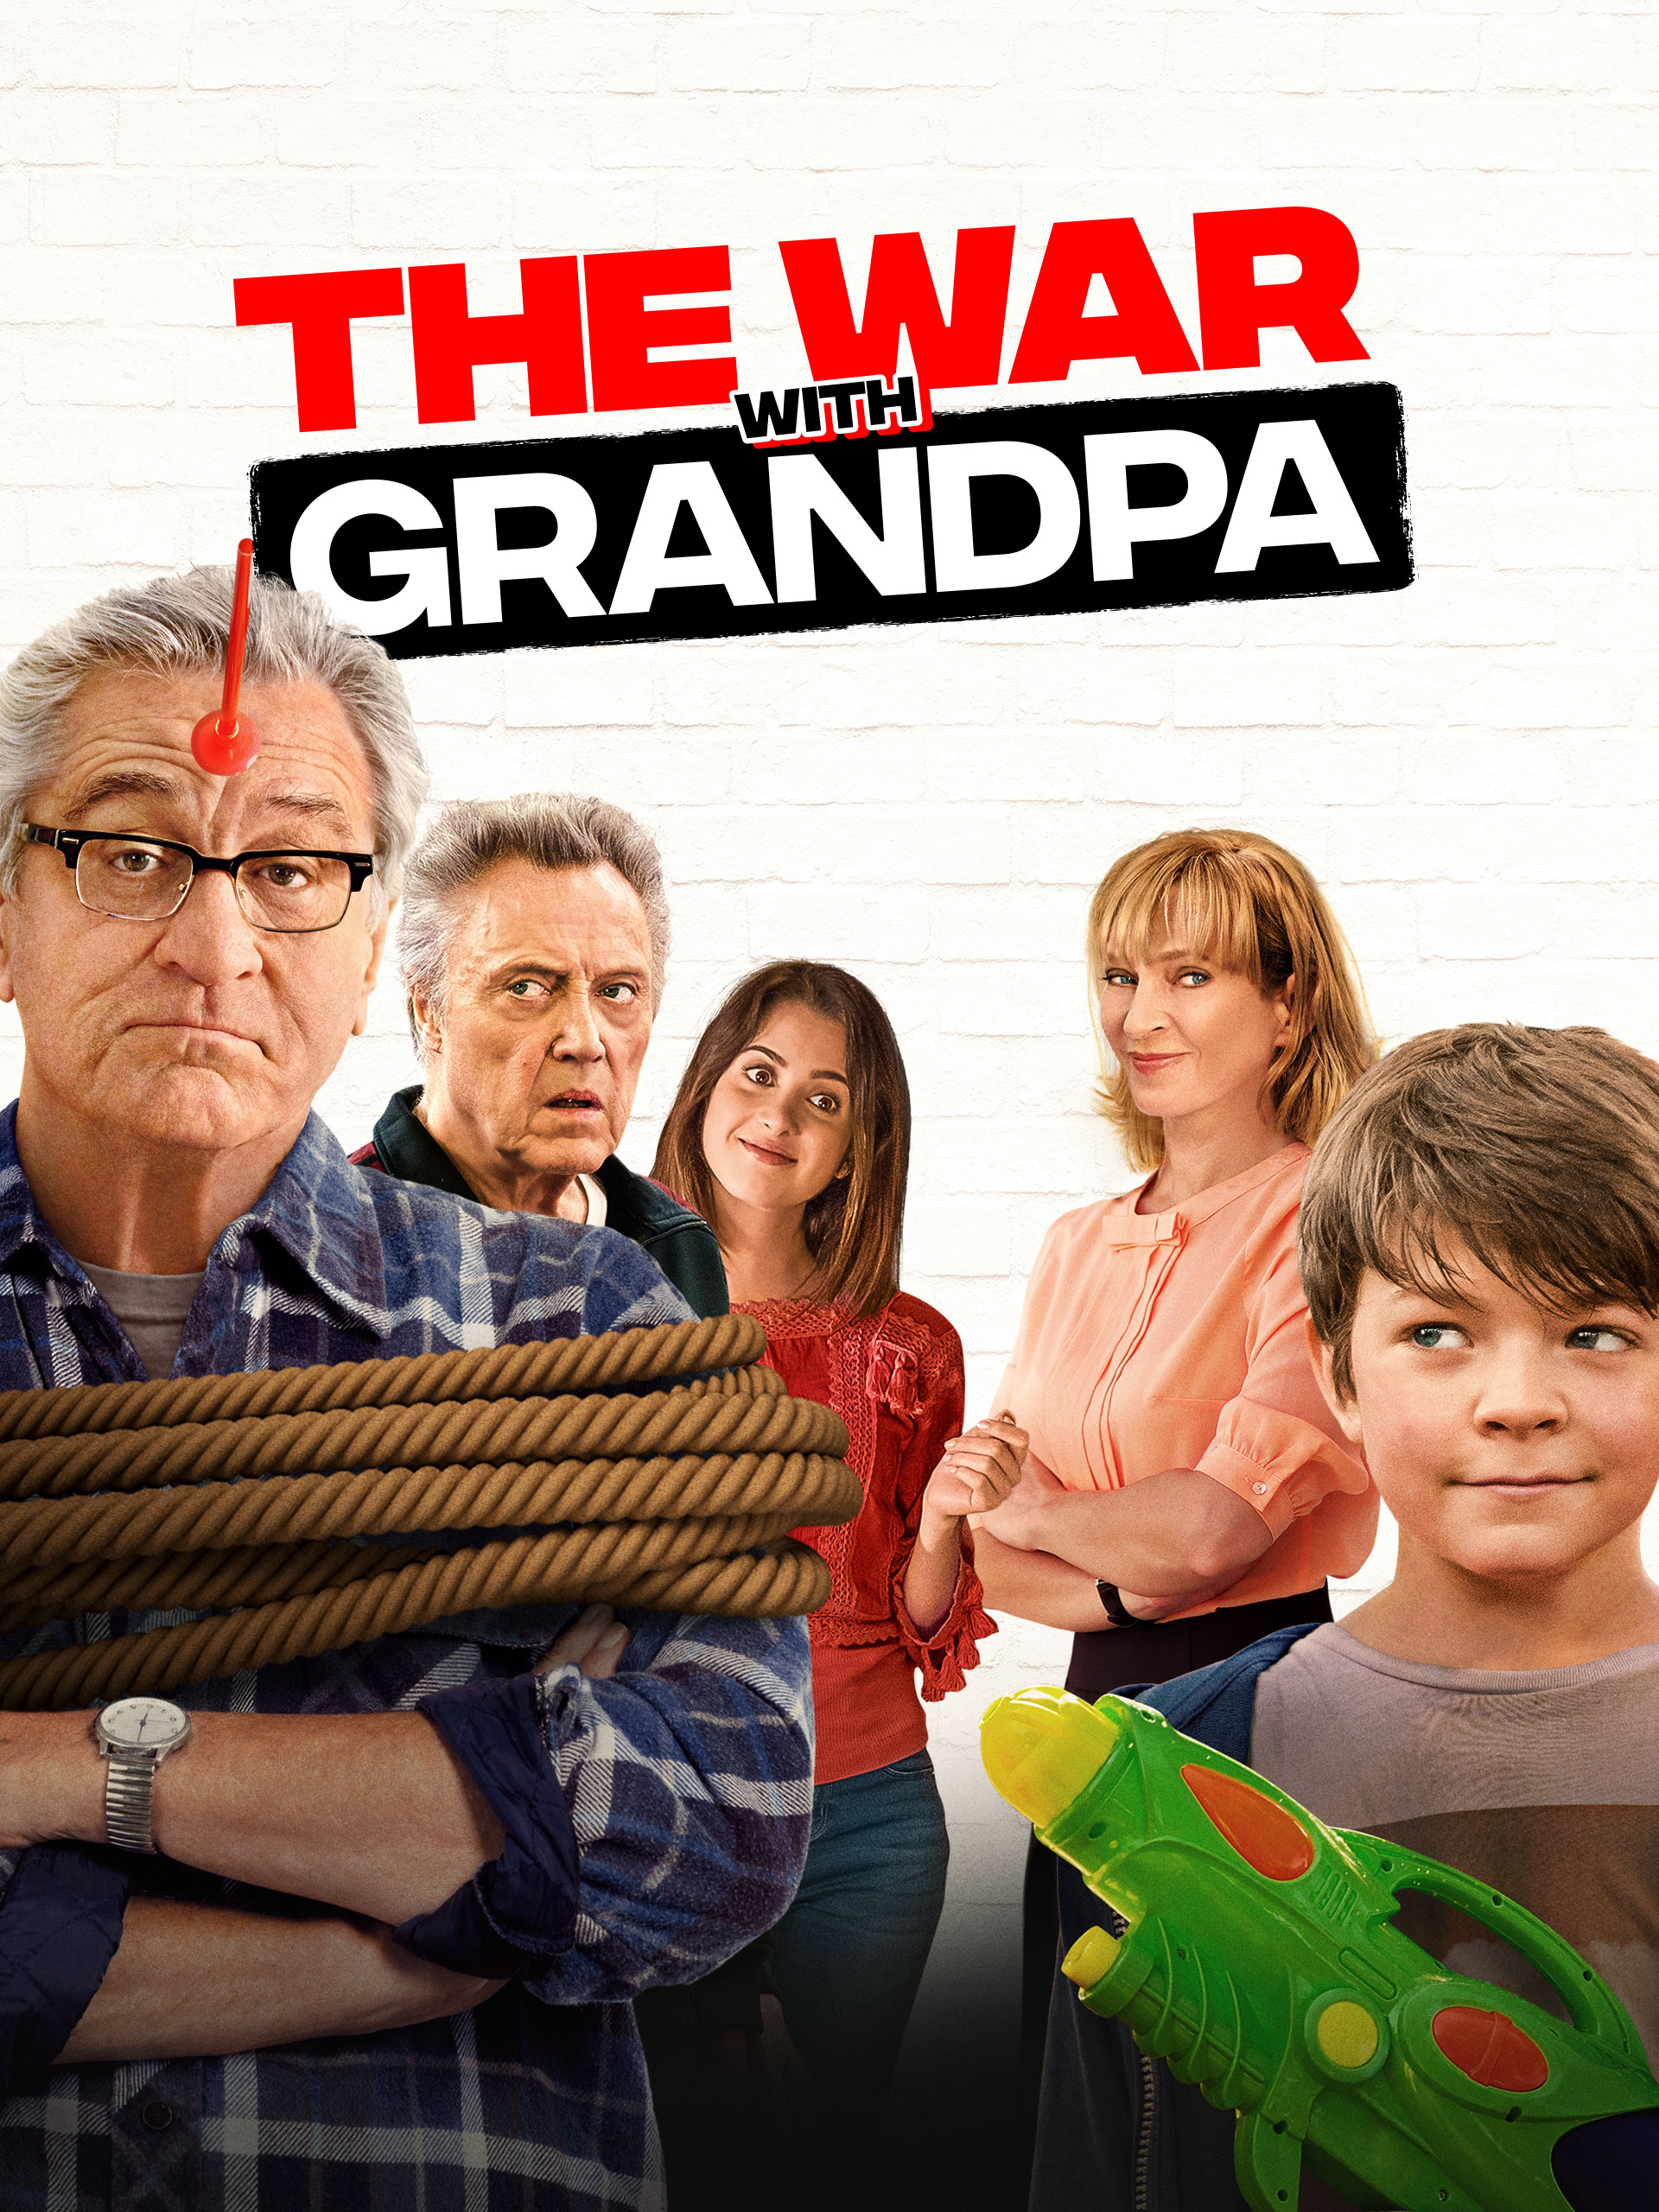 Robert De Niro In The War With Grandpa Wallpapers